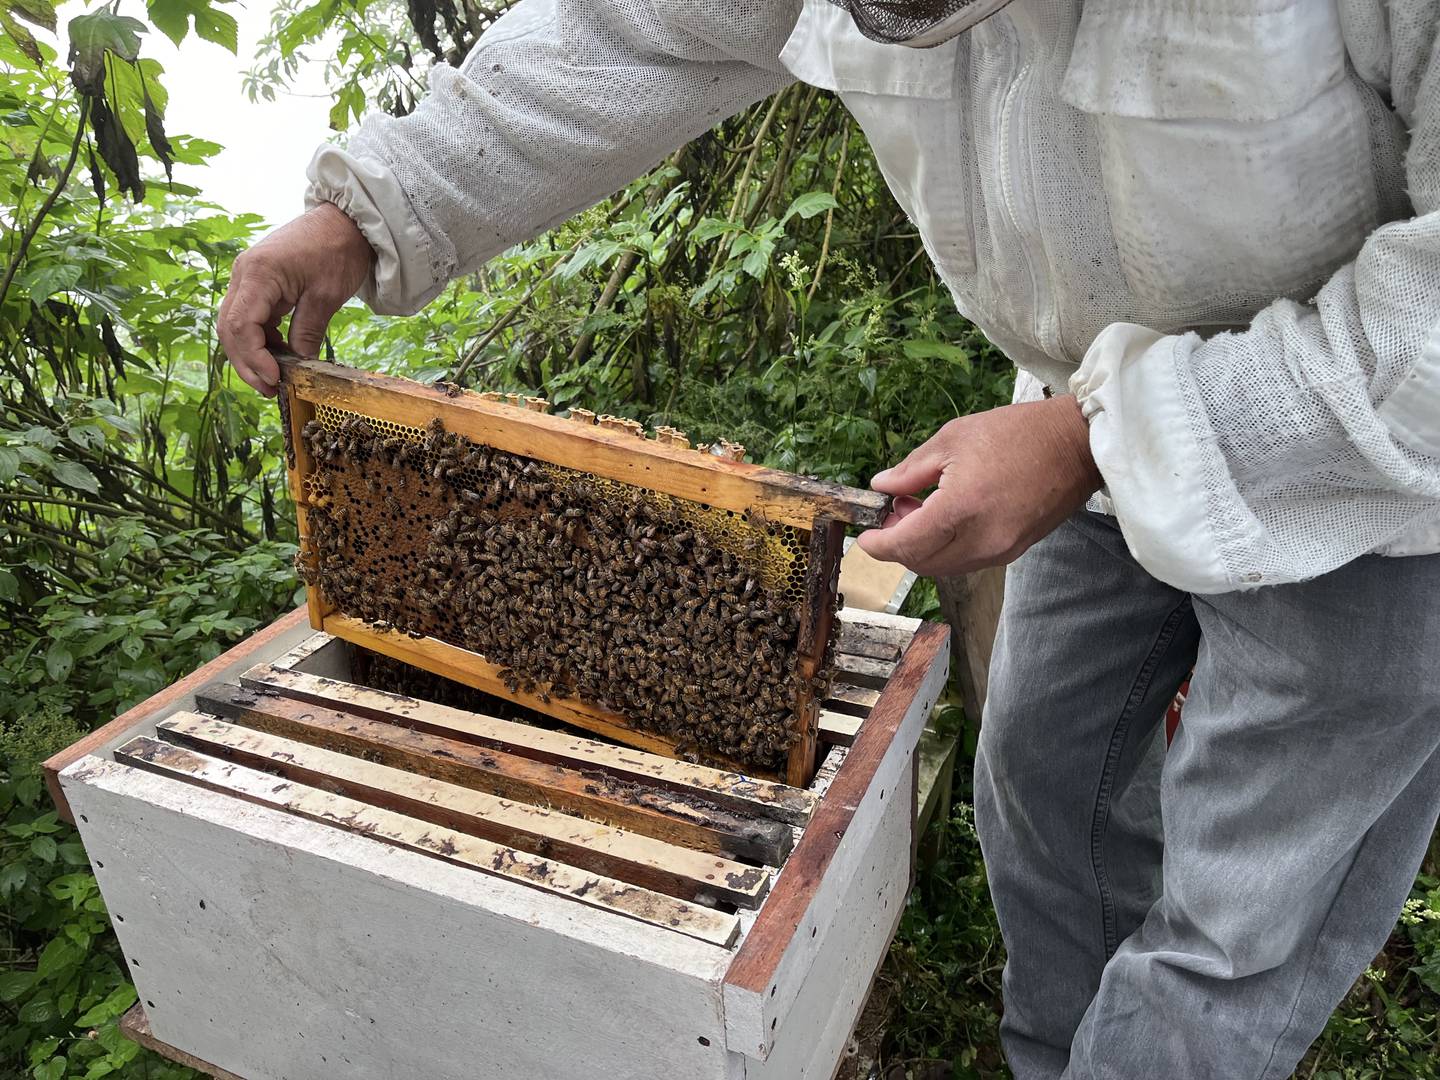 Las colmenas contienen cuadros o marcos móviles los cuales facilitan la manipulación de los insectos y la extracción de miel, polen, cera y otros productos. Fotografía: Juan Fernando Lara S.